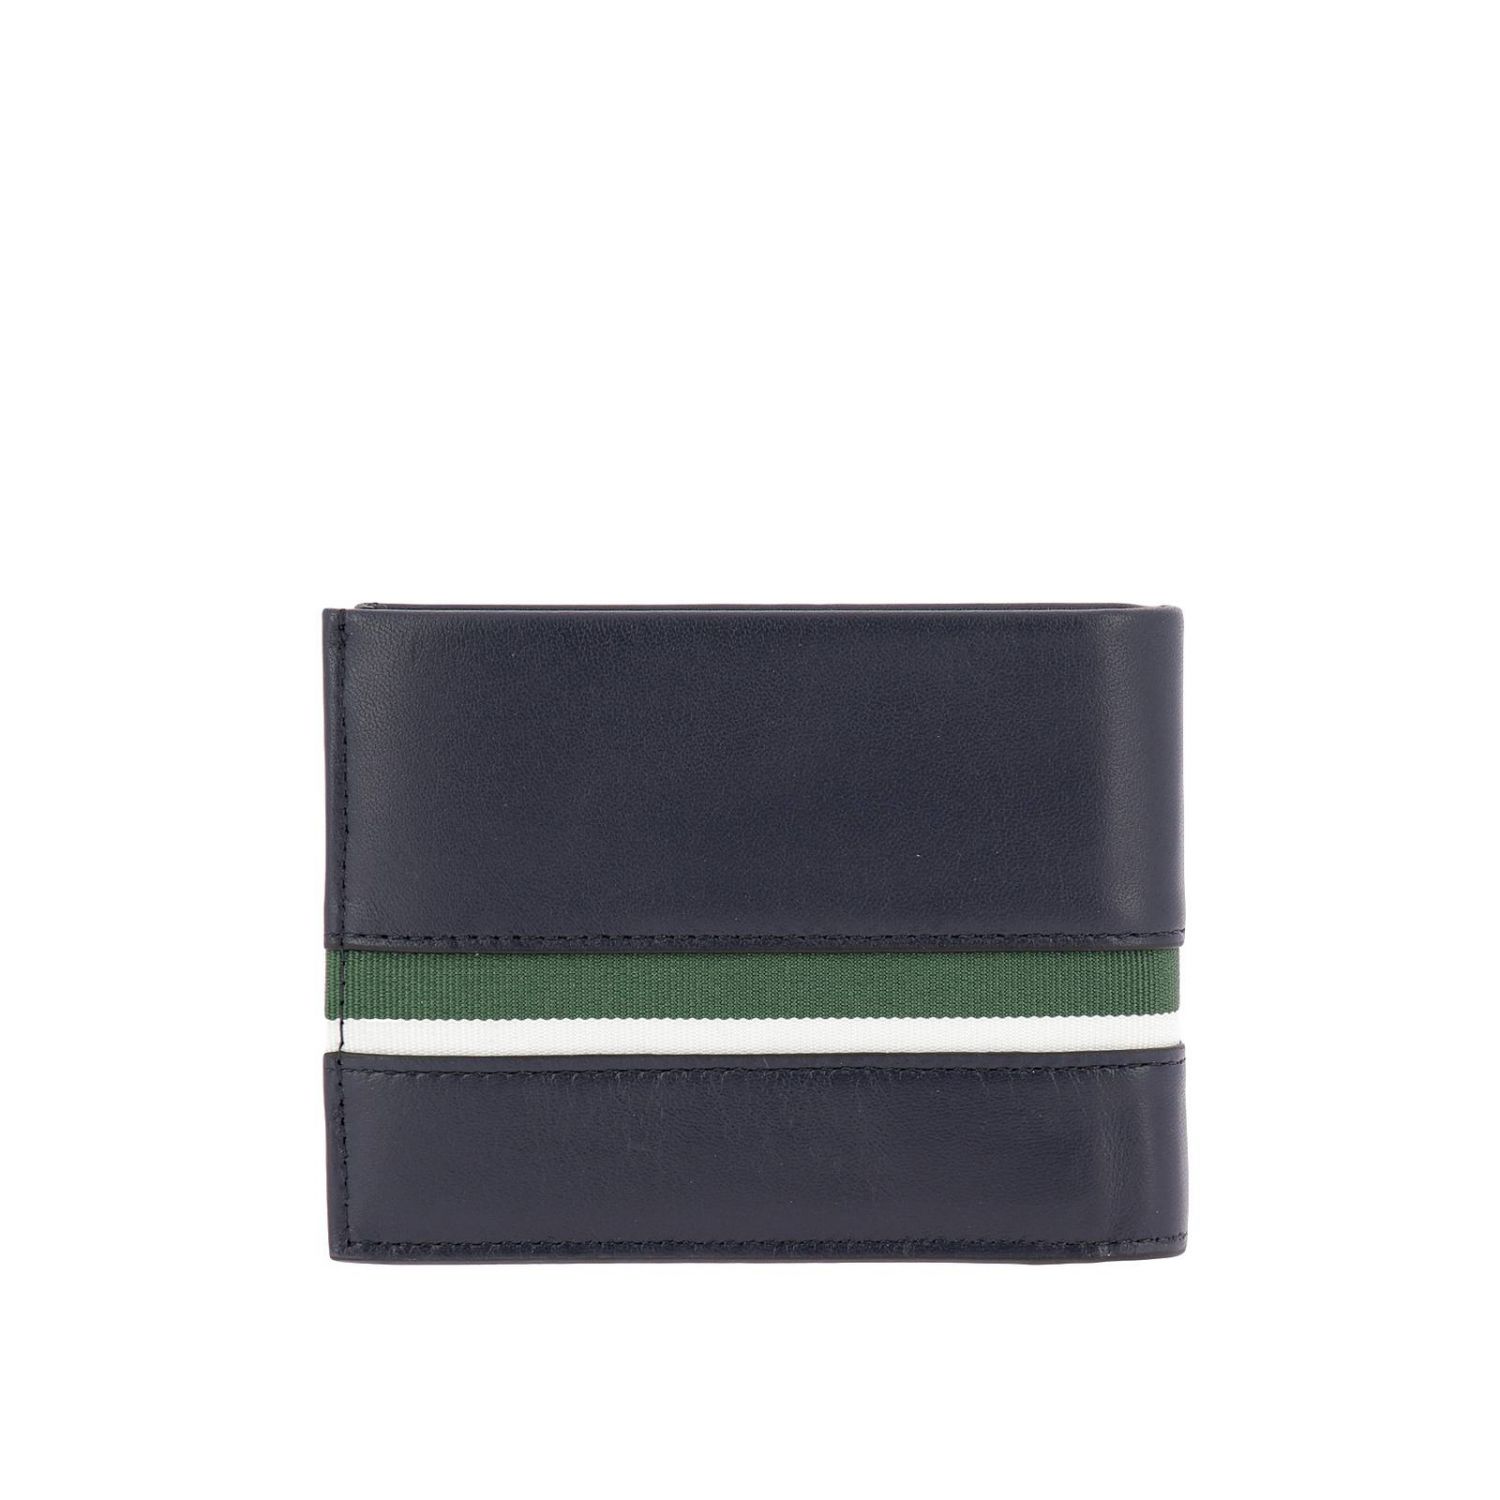 calvin klein blue wallet